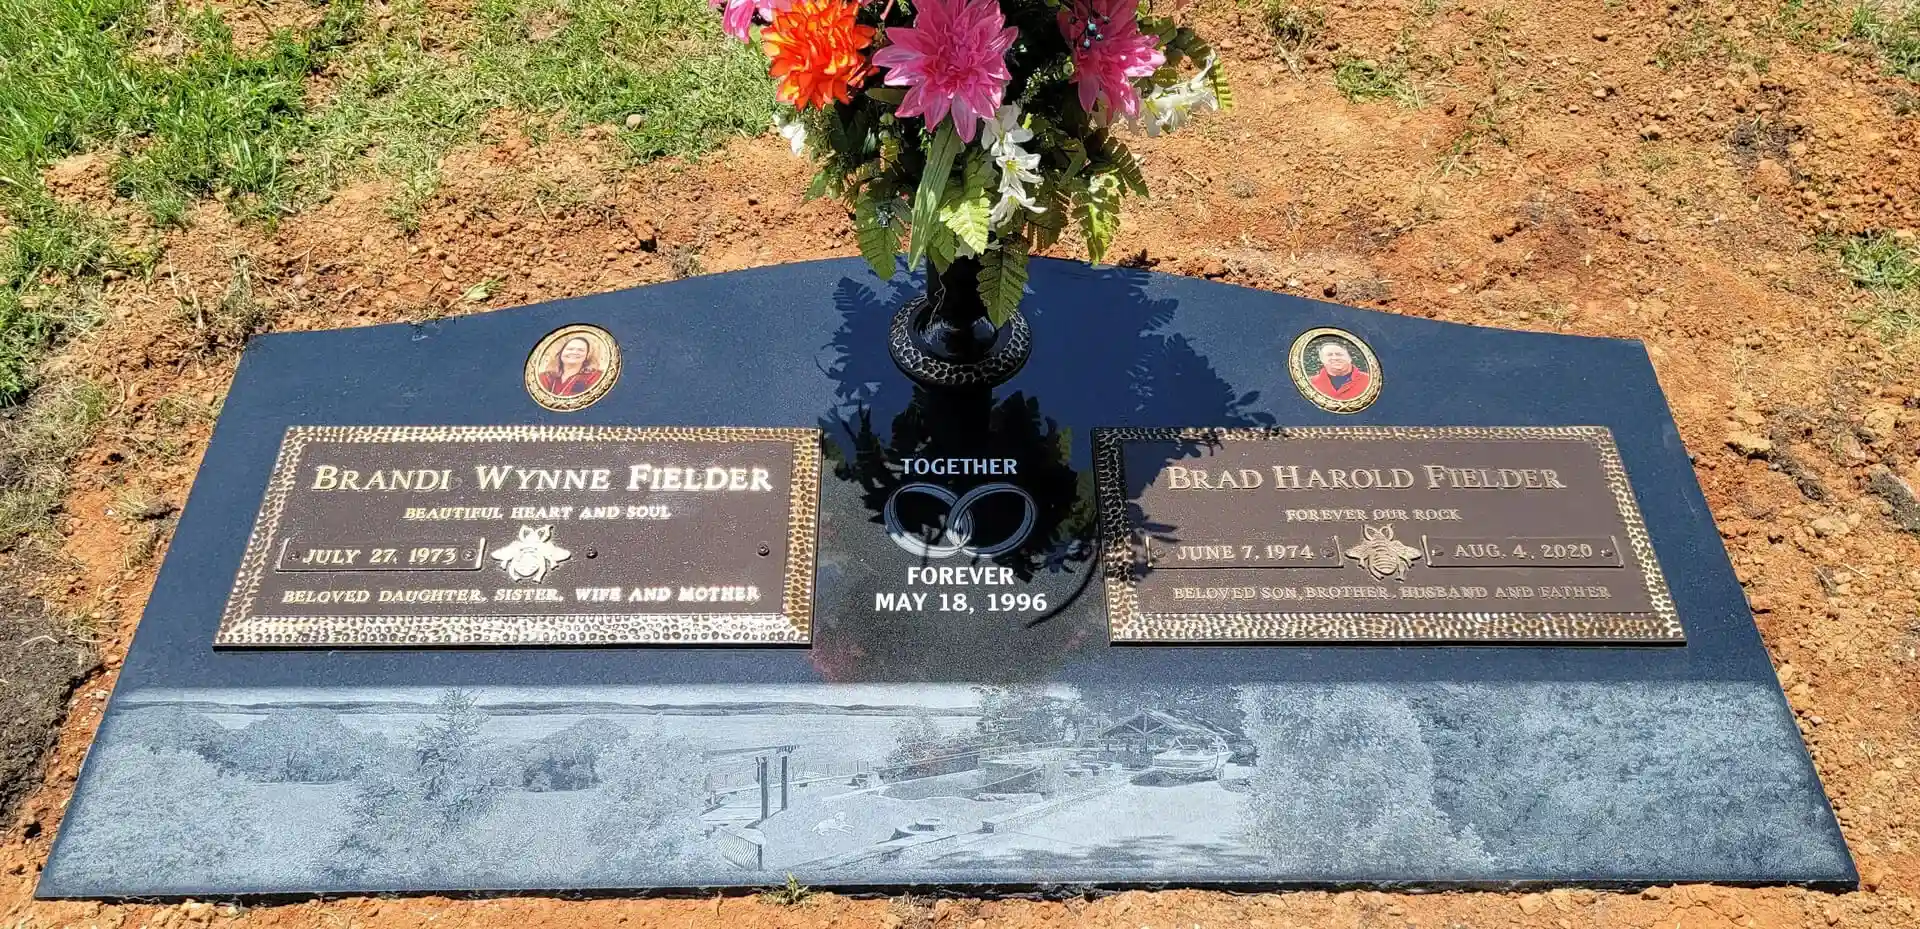 Brandi Wynne Fielder and Brad Harold Fielder Memorial Slab